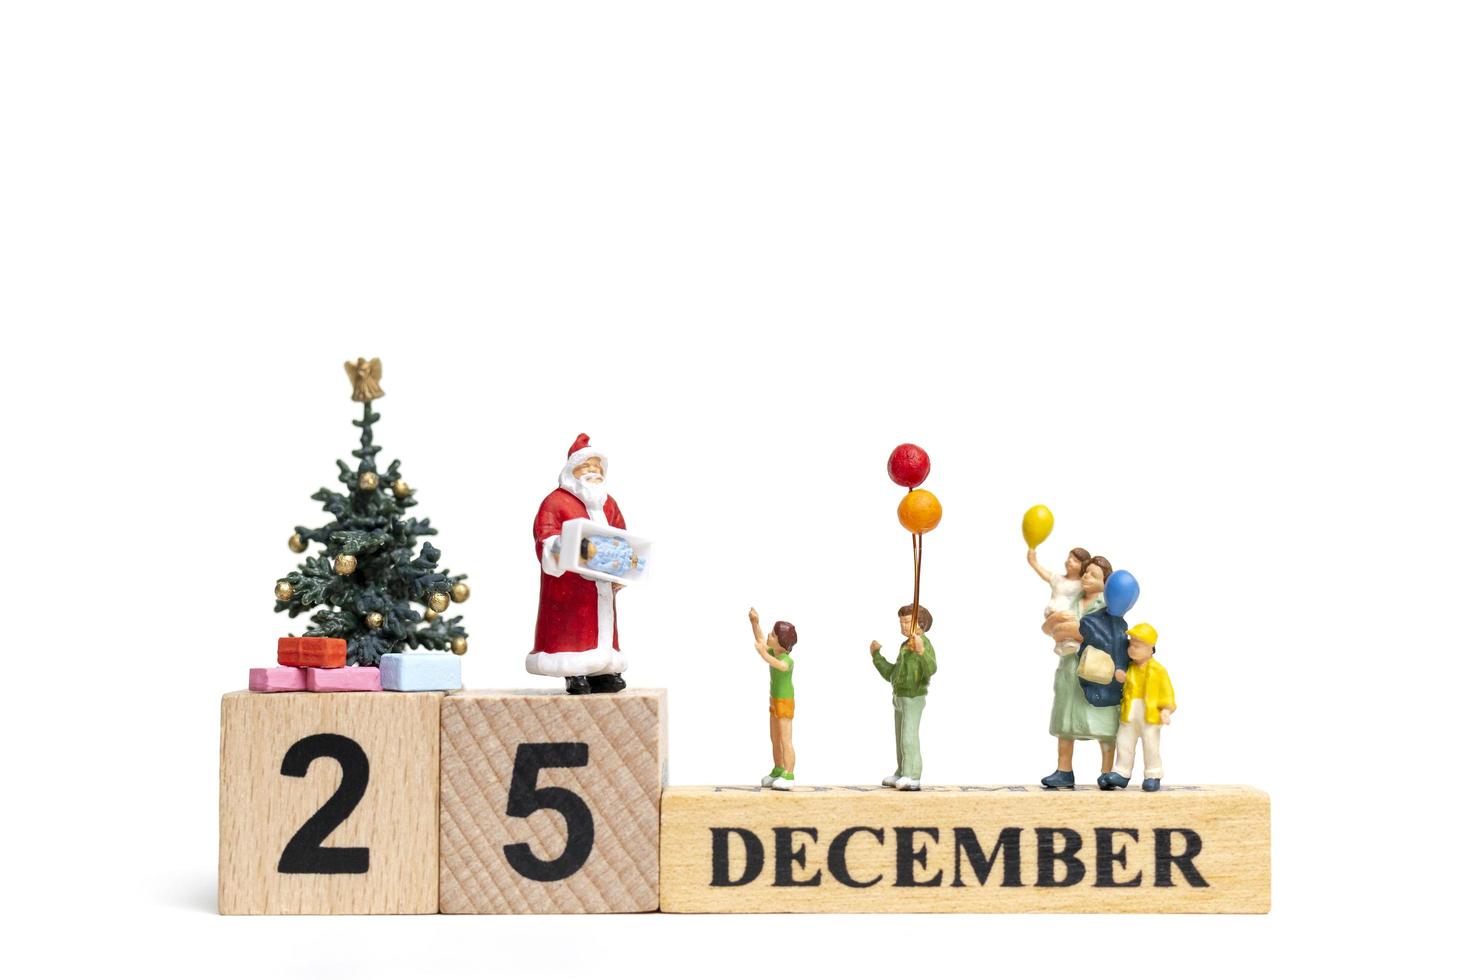 miniatura do papai noel segurando presentes para uma família feliz, conceito de natal e feliz ano novo foto